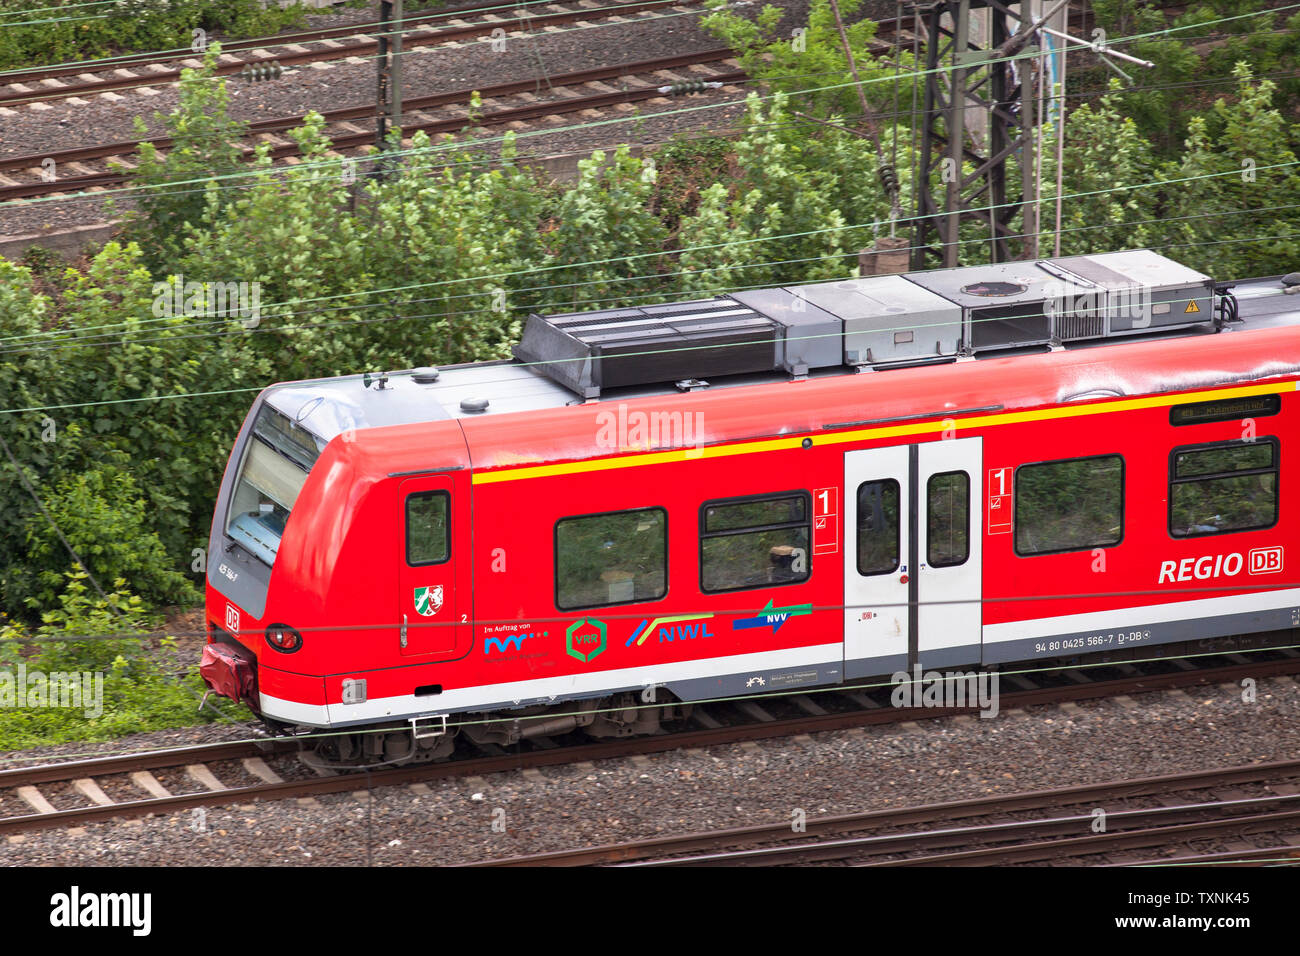 Local train Regionalbahn dans le quartier Deutz, Cologne, Allemagne. Regionallbahn im Stadtteil Deutz, Koeln, Deutschland. Banque D'Images